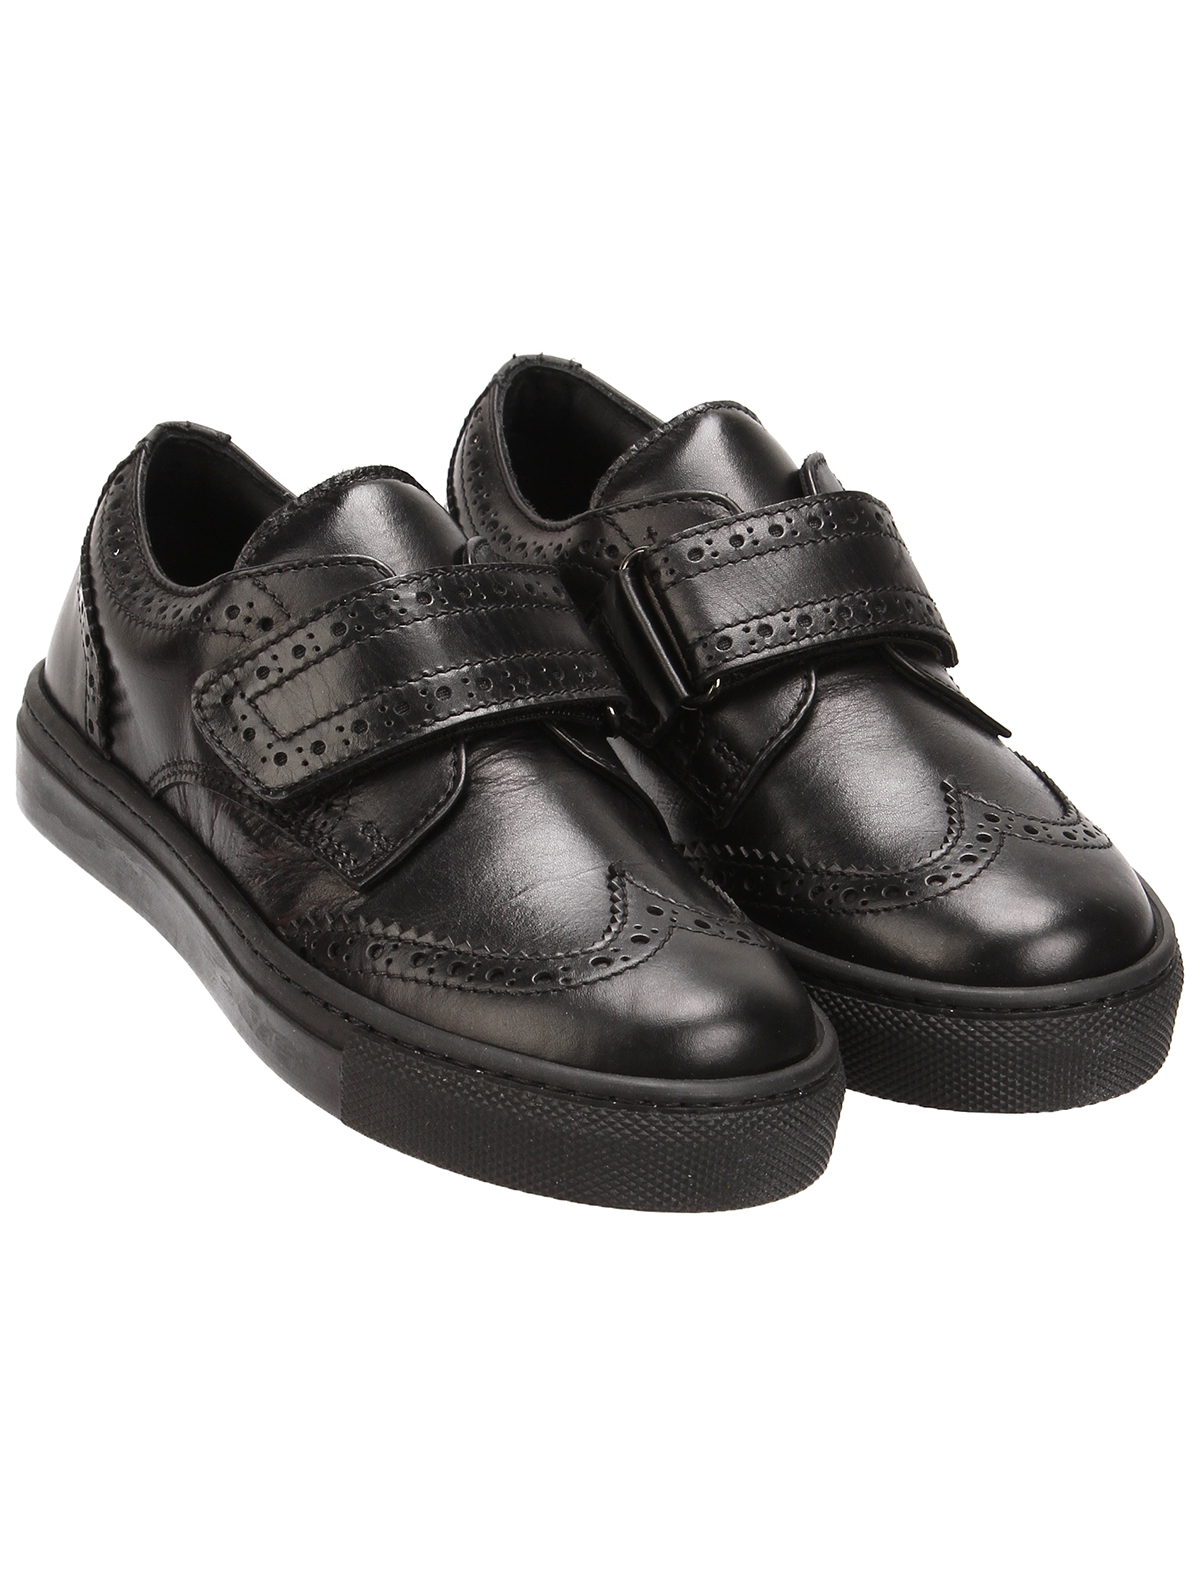 ботинки rondinella, черные